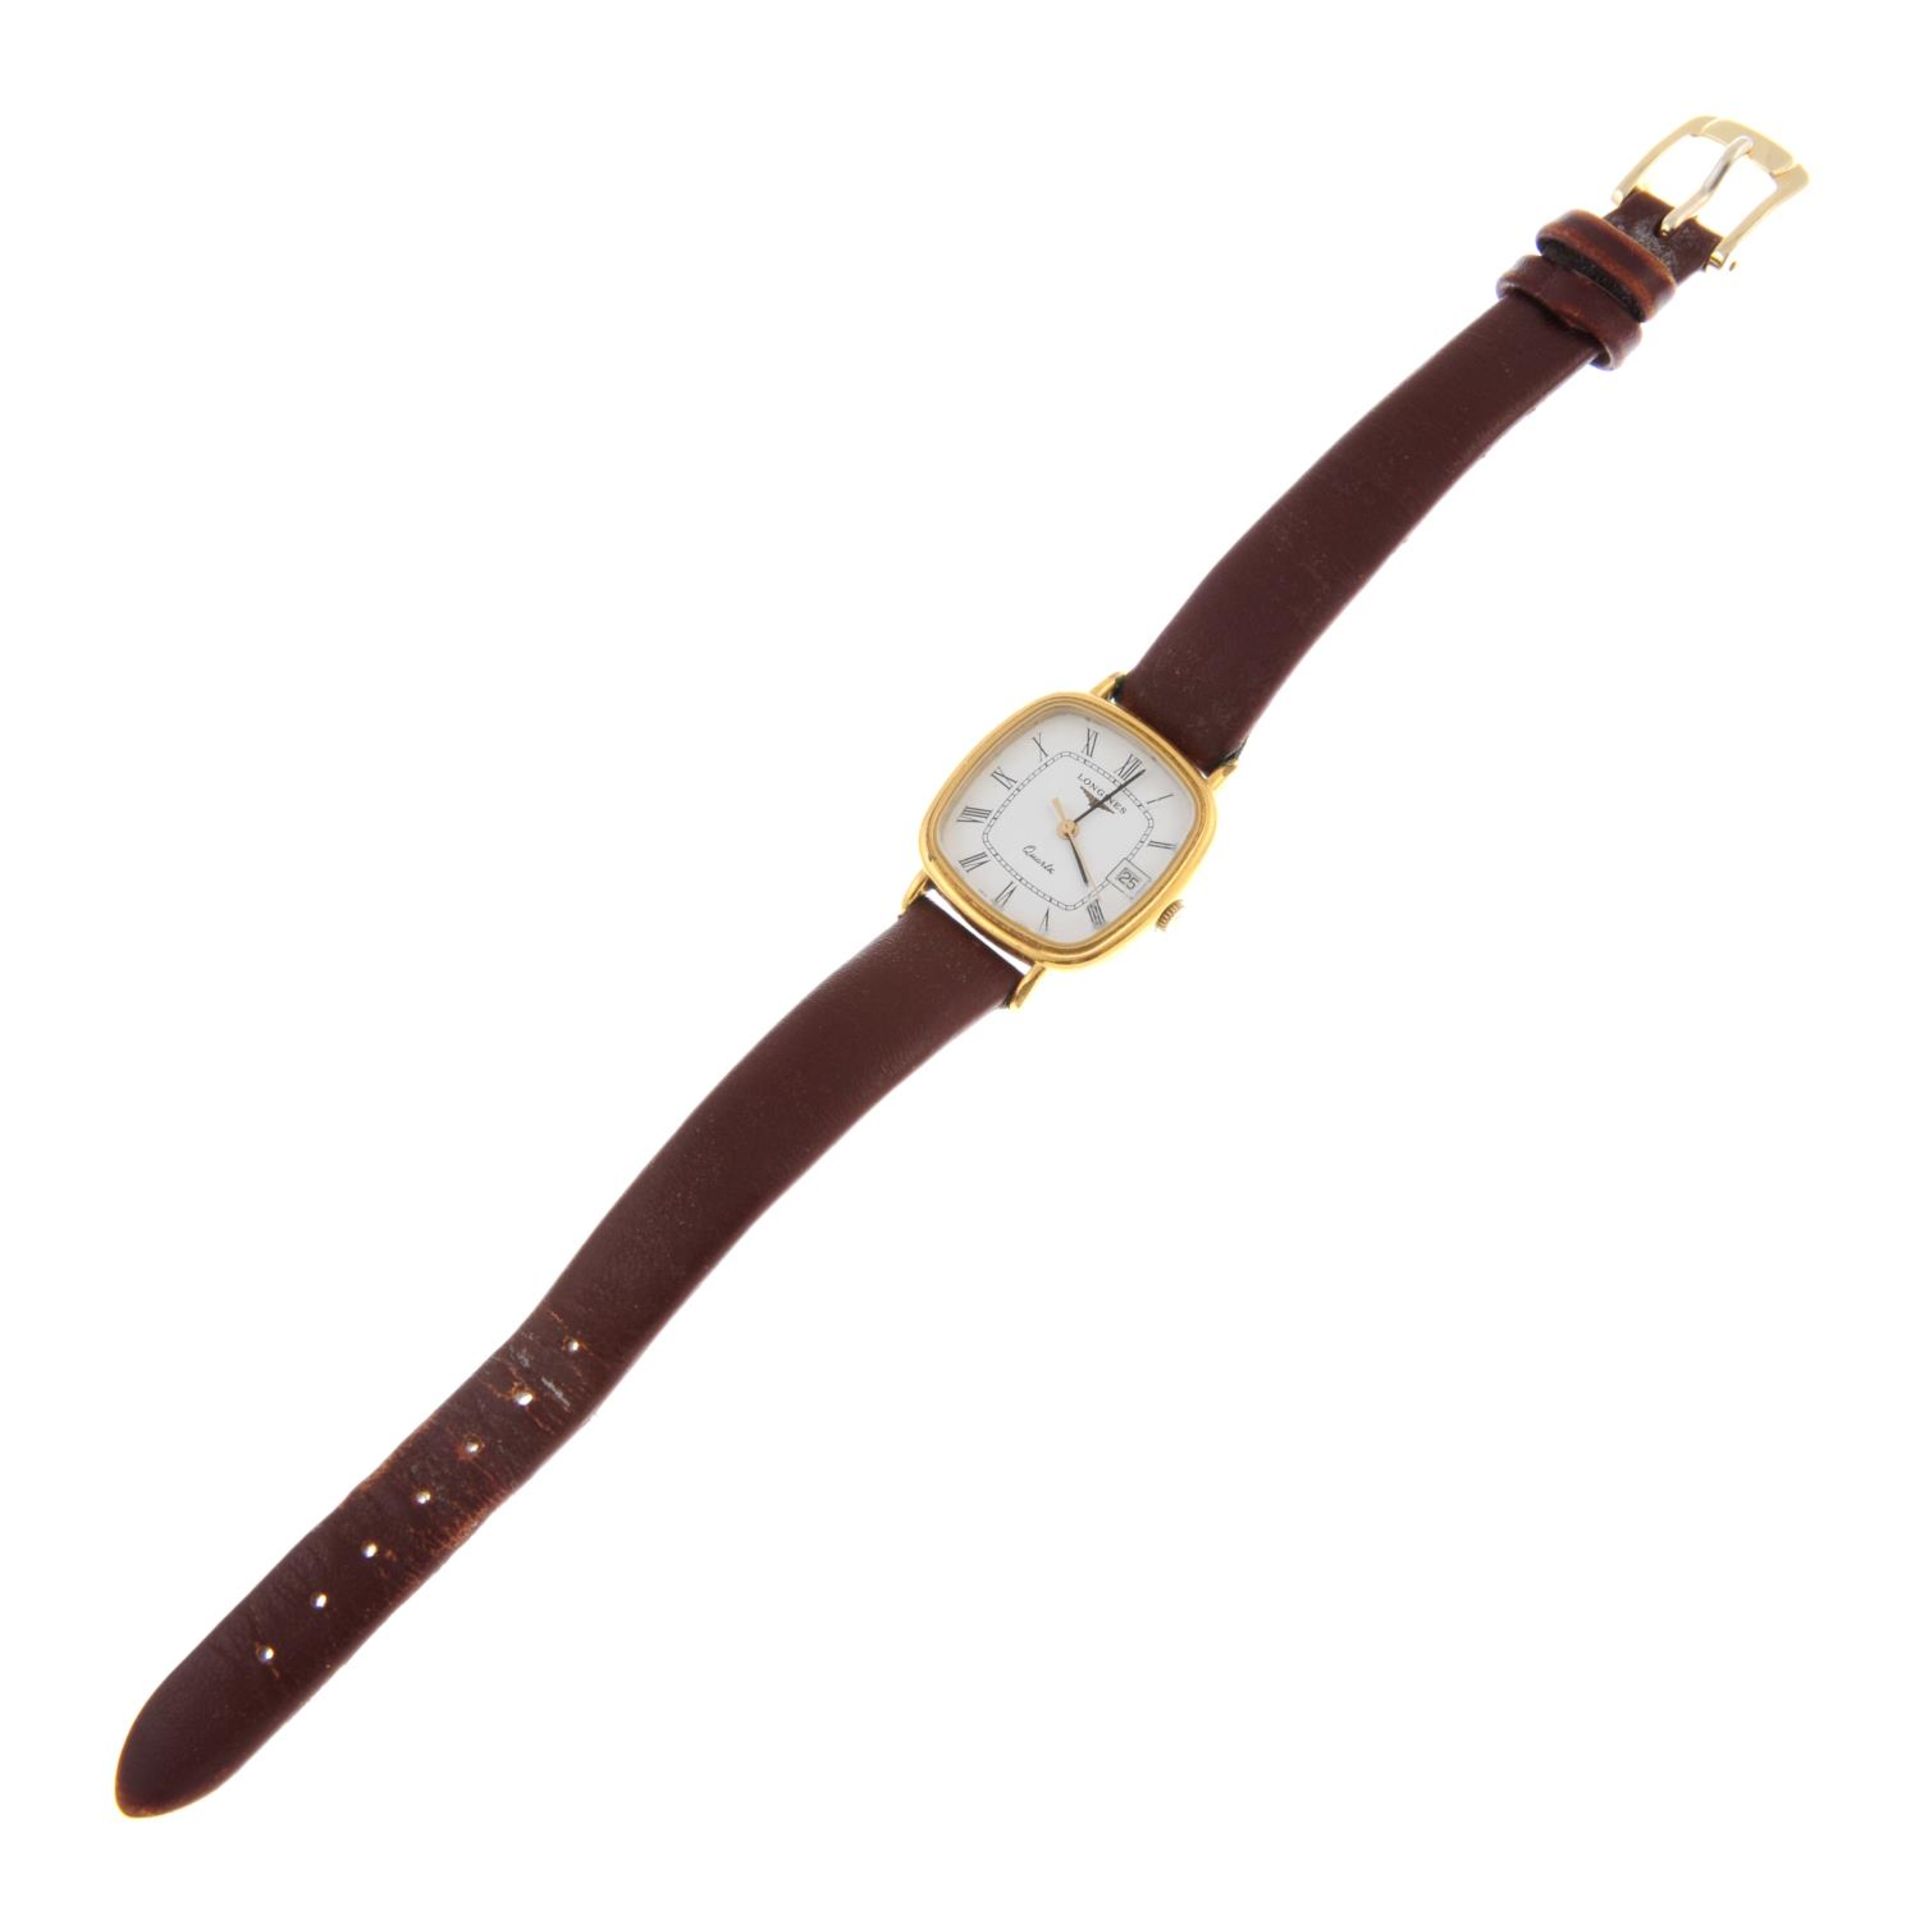 LONGINES - a Les Grandes Classiques bracelet watch. - Image 6 of 6